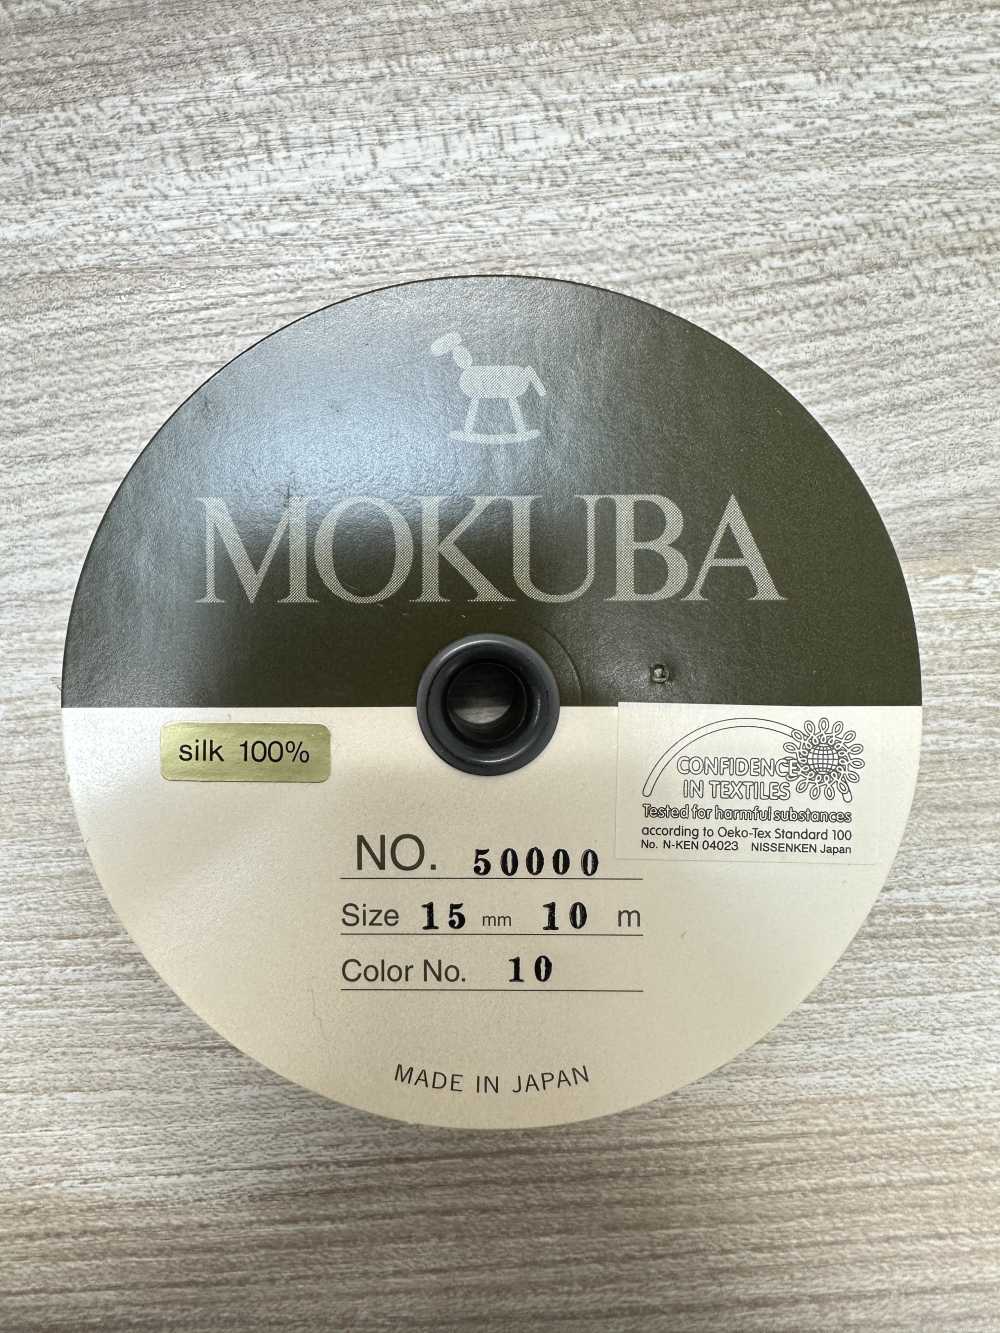 50000 MOKUBA 실크 페타 샴 테이프 【아울렛】[리본 테이프 코드] Mokuba